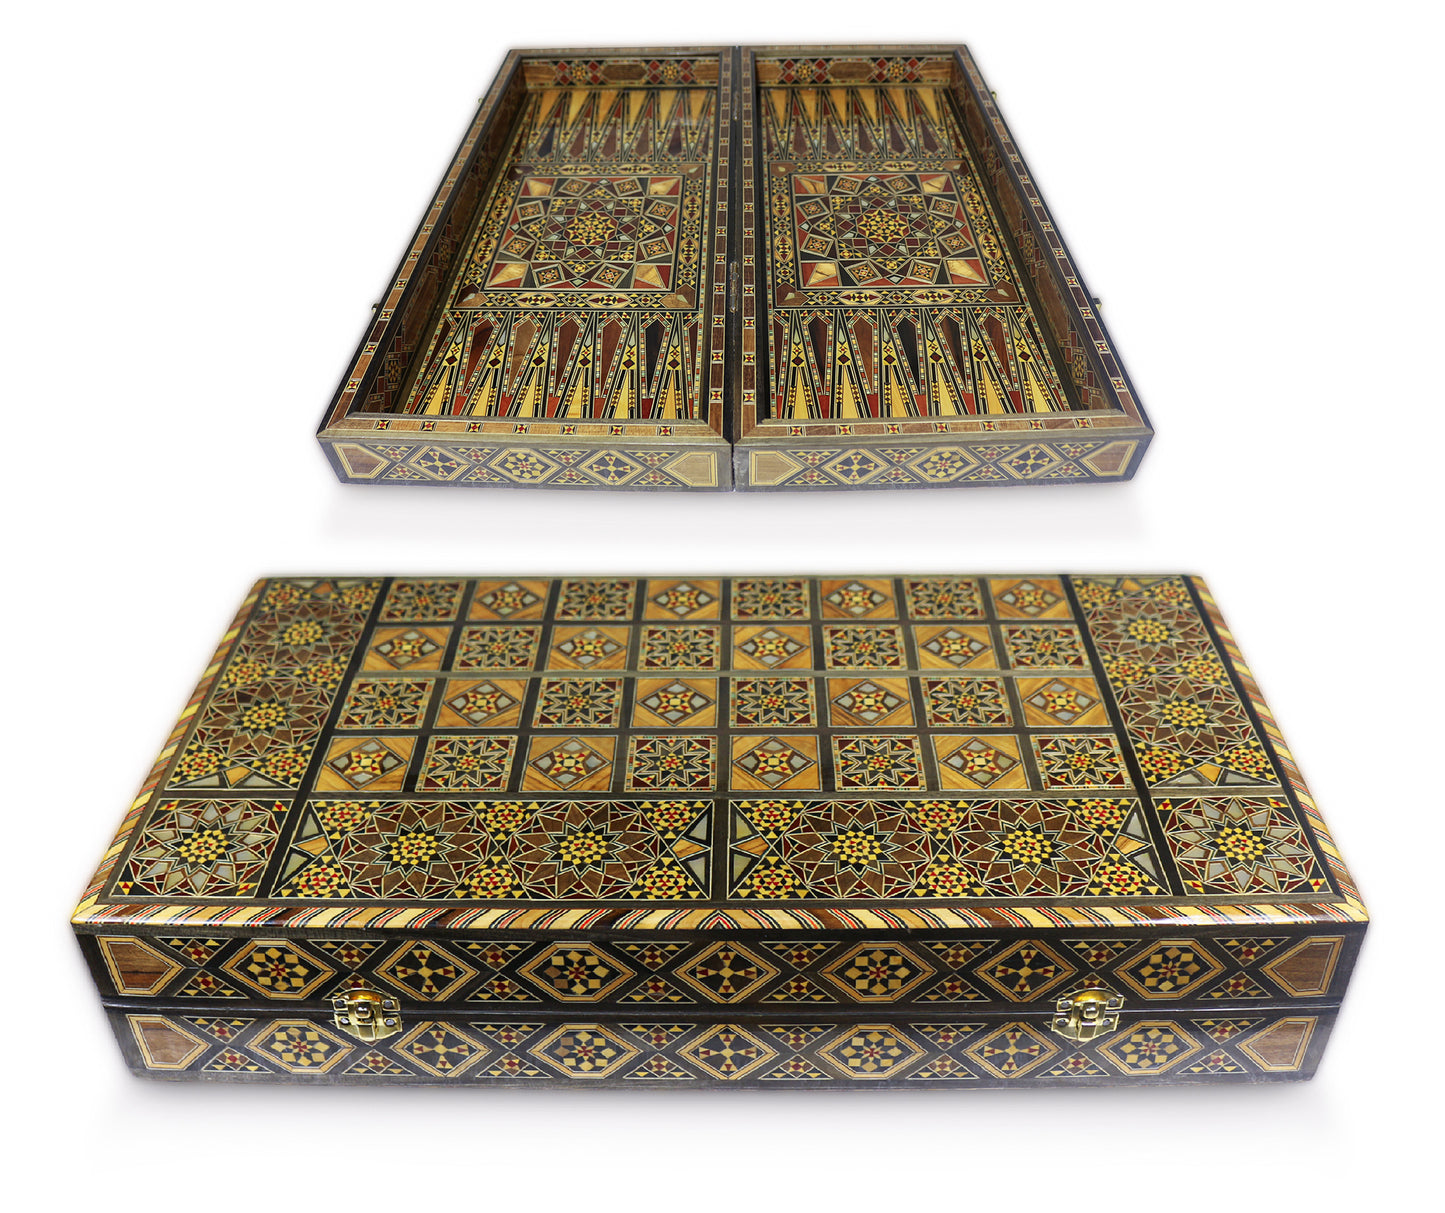 Neu 53 x 53 cm Holz Backgammon/Schachspiel/Dama Brett  K 6-1-53 mit Holz Backgammon Steine